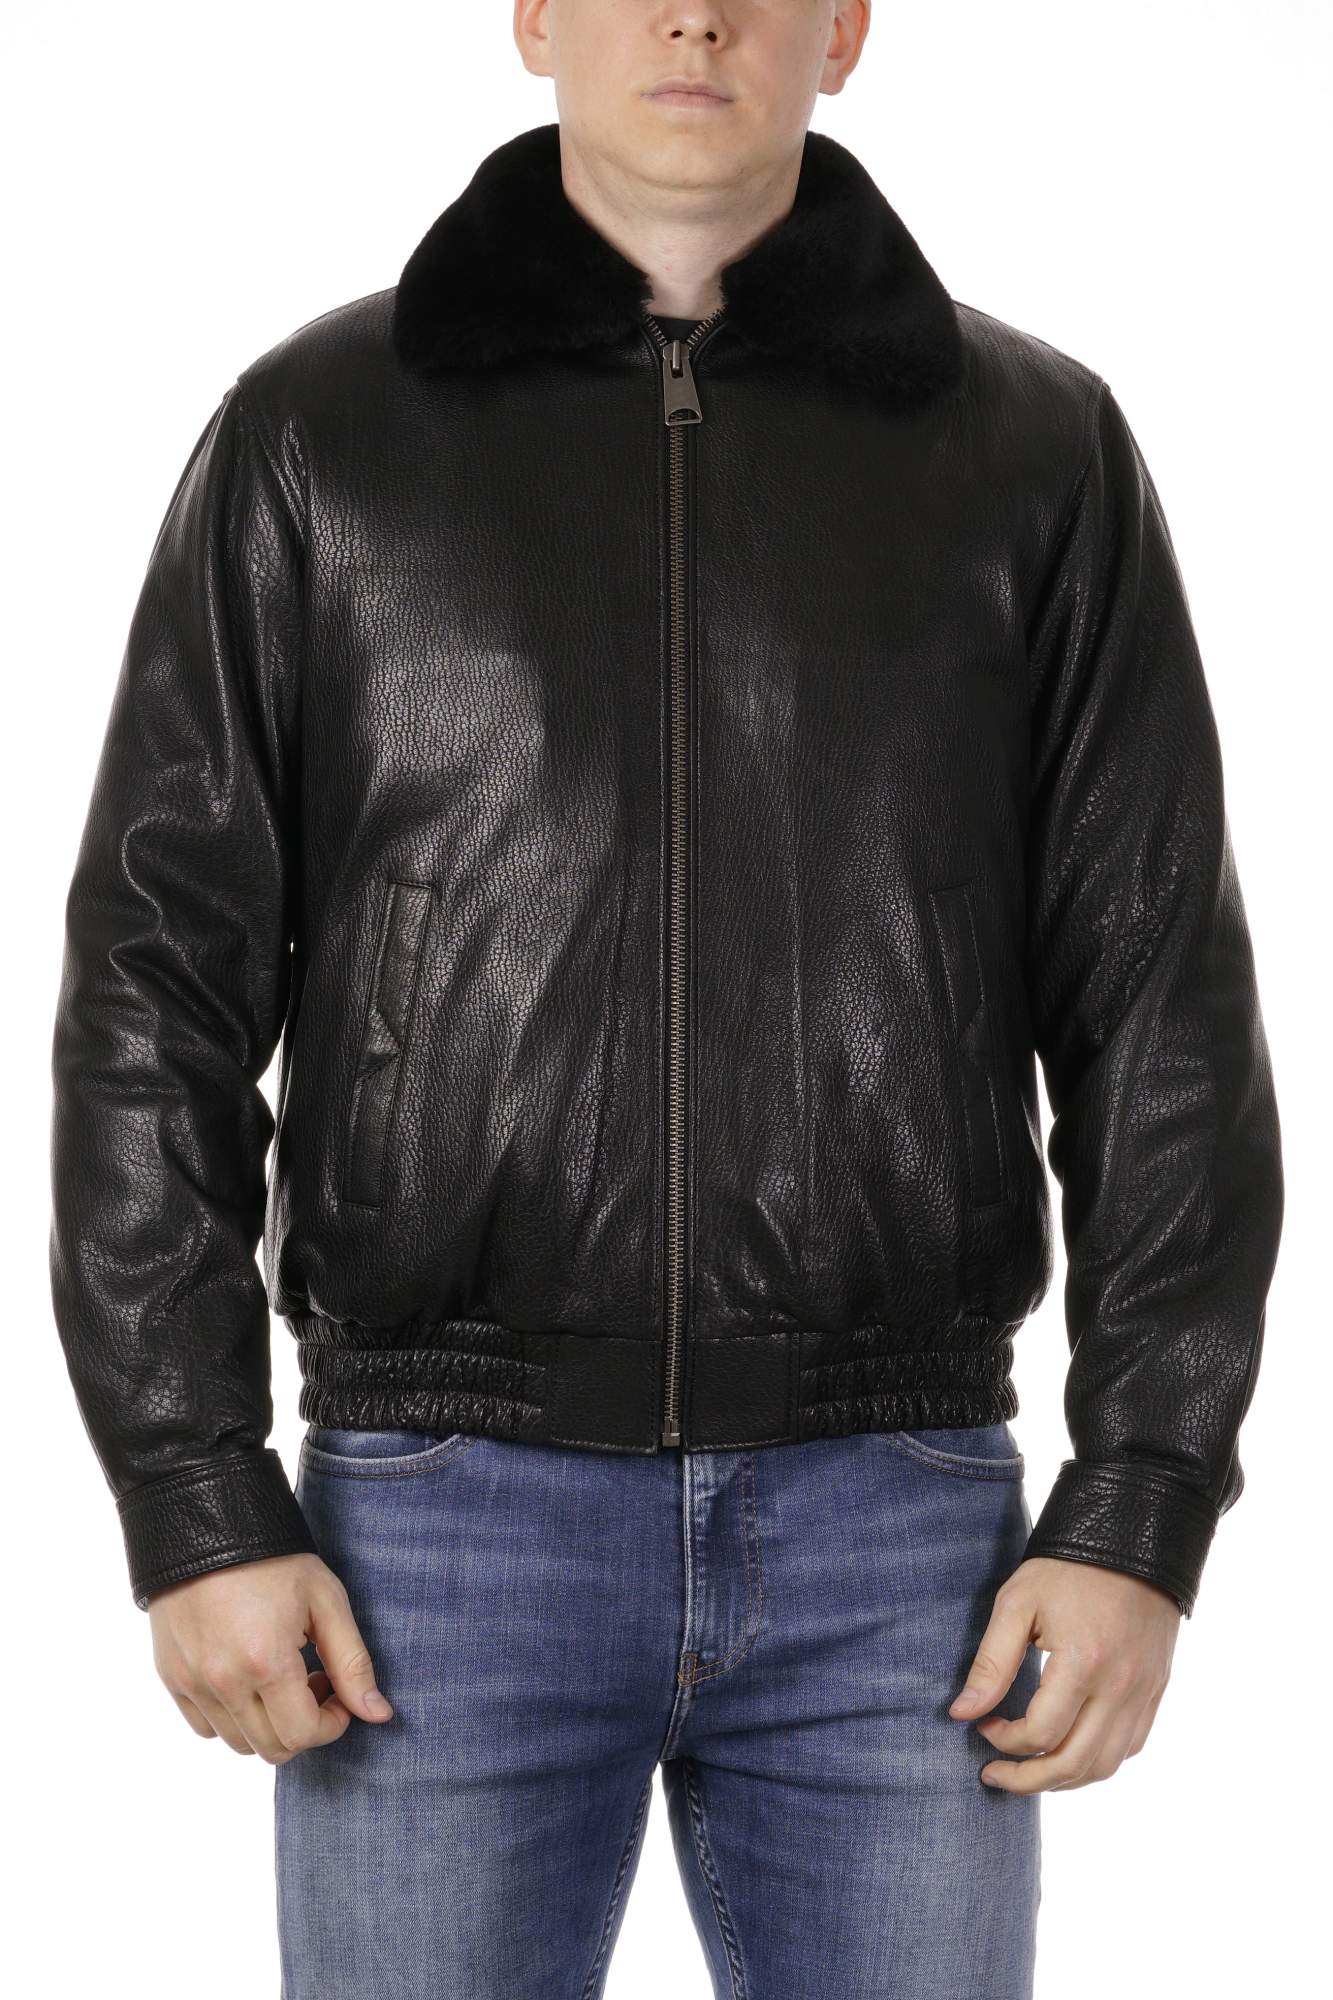 Кожаная куртка мужская PDONNA черная - купить в МОСМЕХА, цена на Мегамаркет